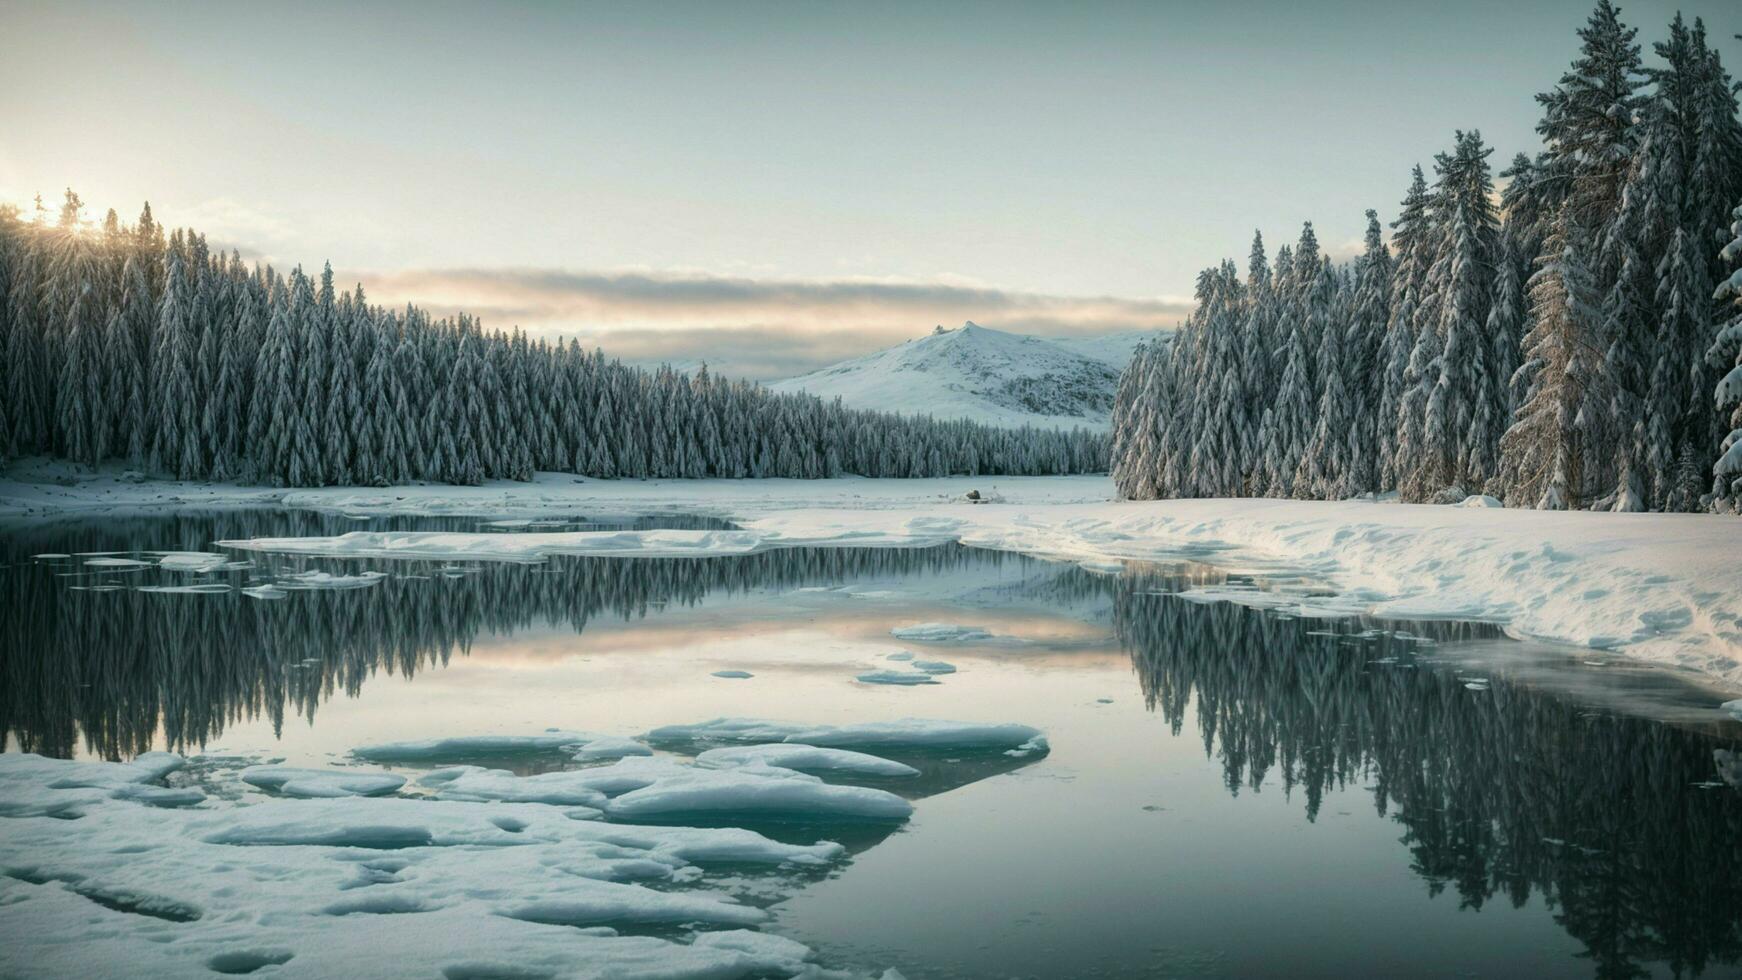 ai généré explorer le sérénité de hiver vitrine une tranquille scène de une congelé Lac entouré par neige chargé pin des arbres, soulignant le immobilité et beauté de le hiver paysage. photo